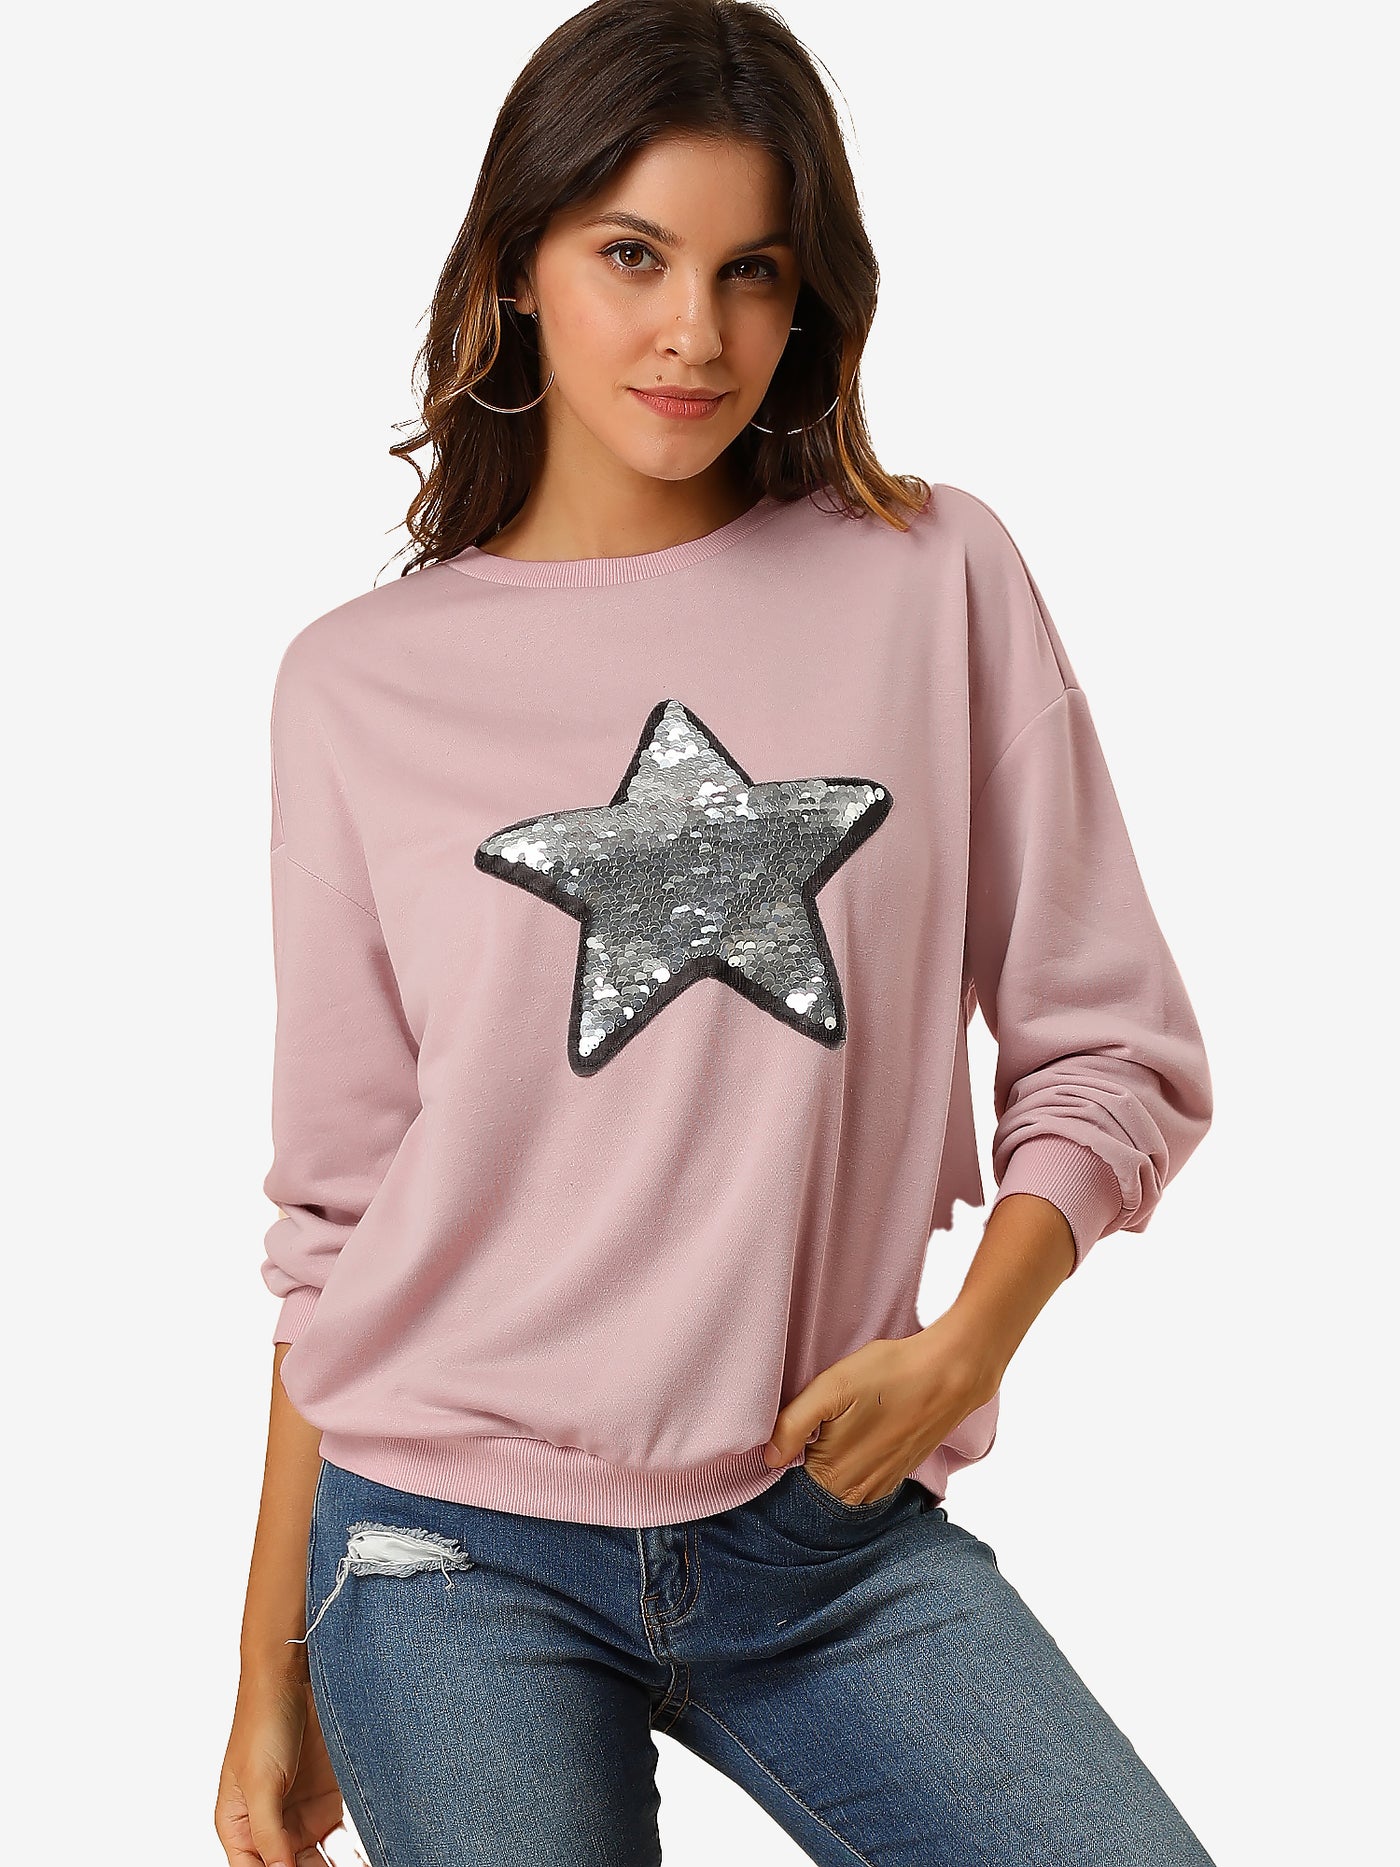 Allegra K Sequin Shiny Star Crew Neck Long Sleeve Sweatshirt Top